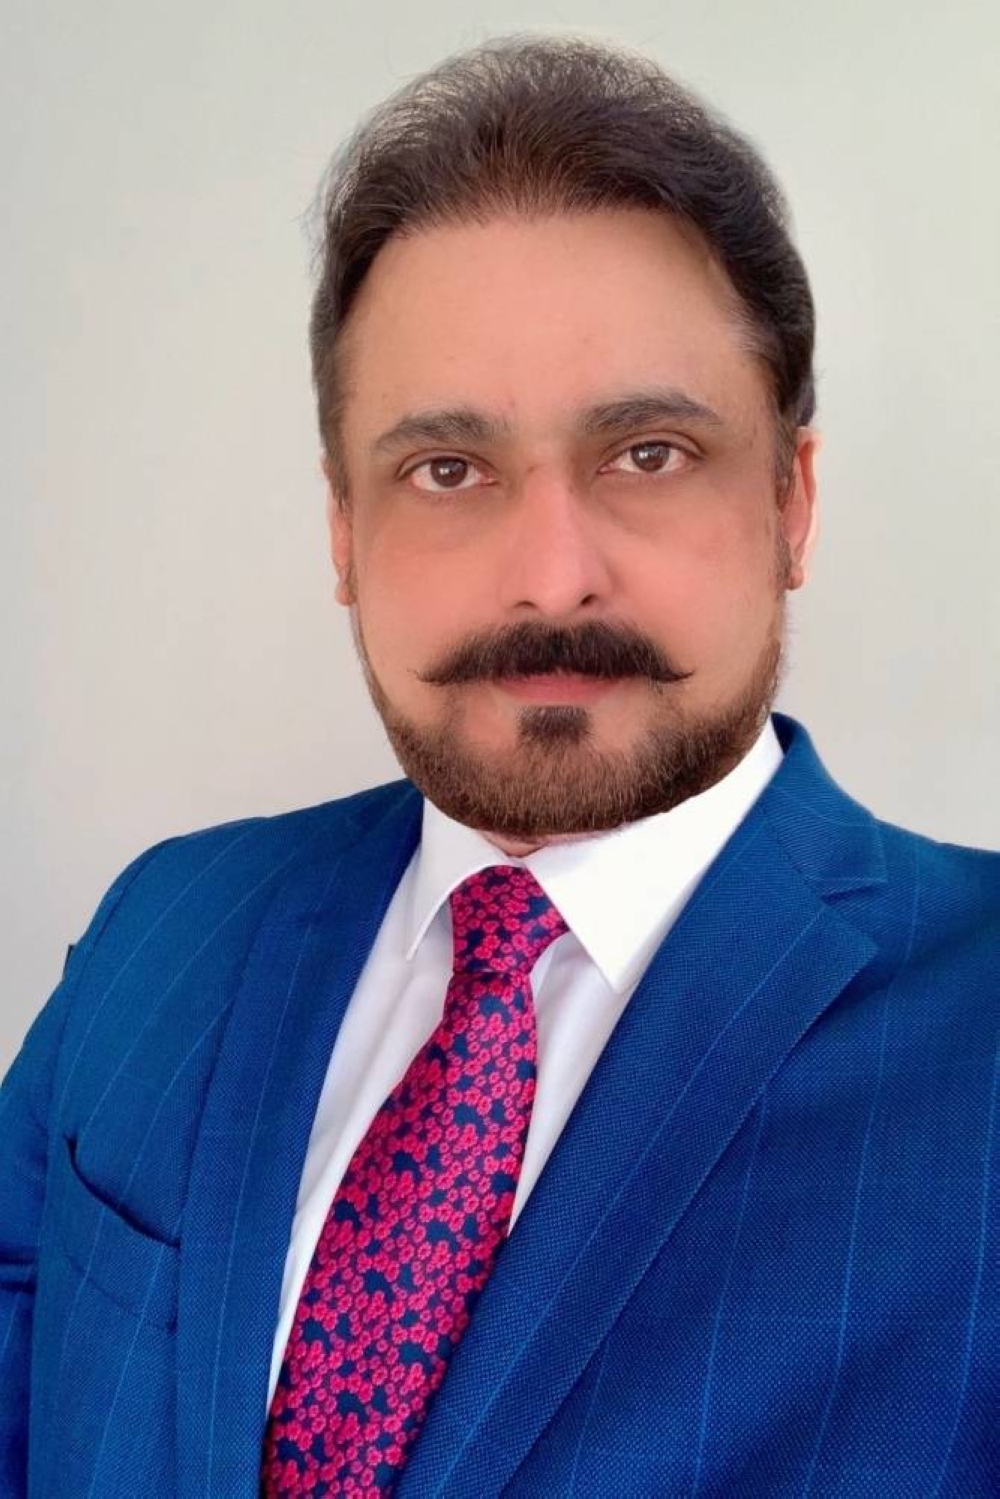 Visa country manager (Qatar) Dr Sudheer Nair